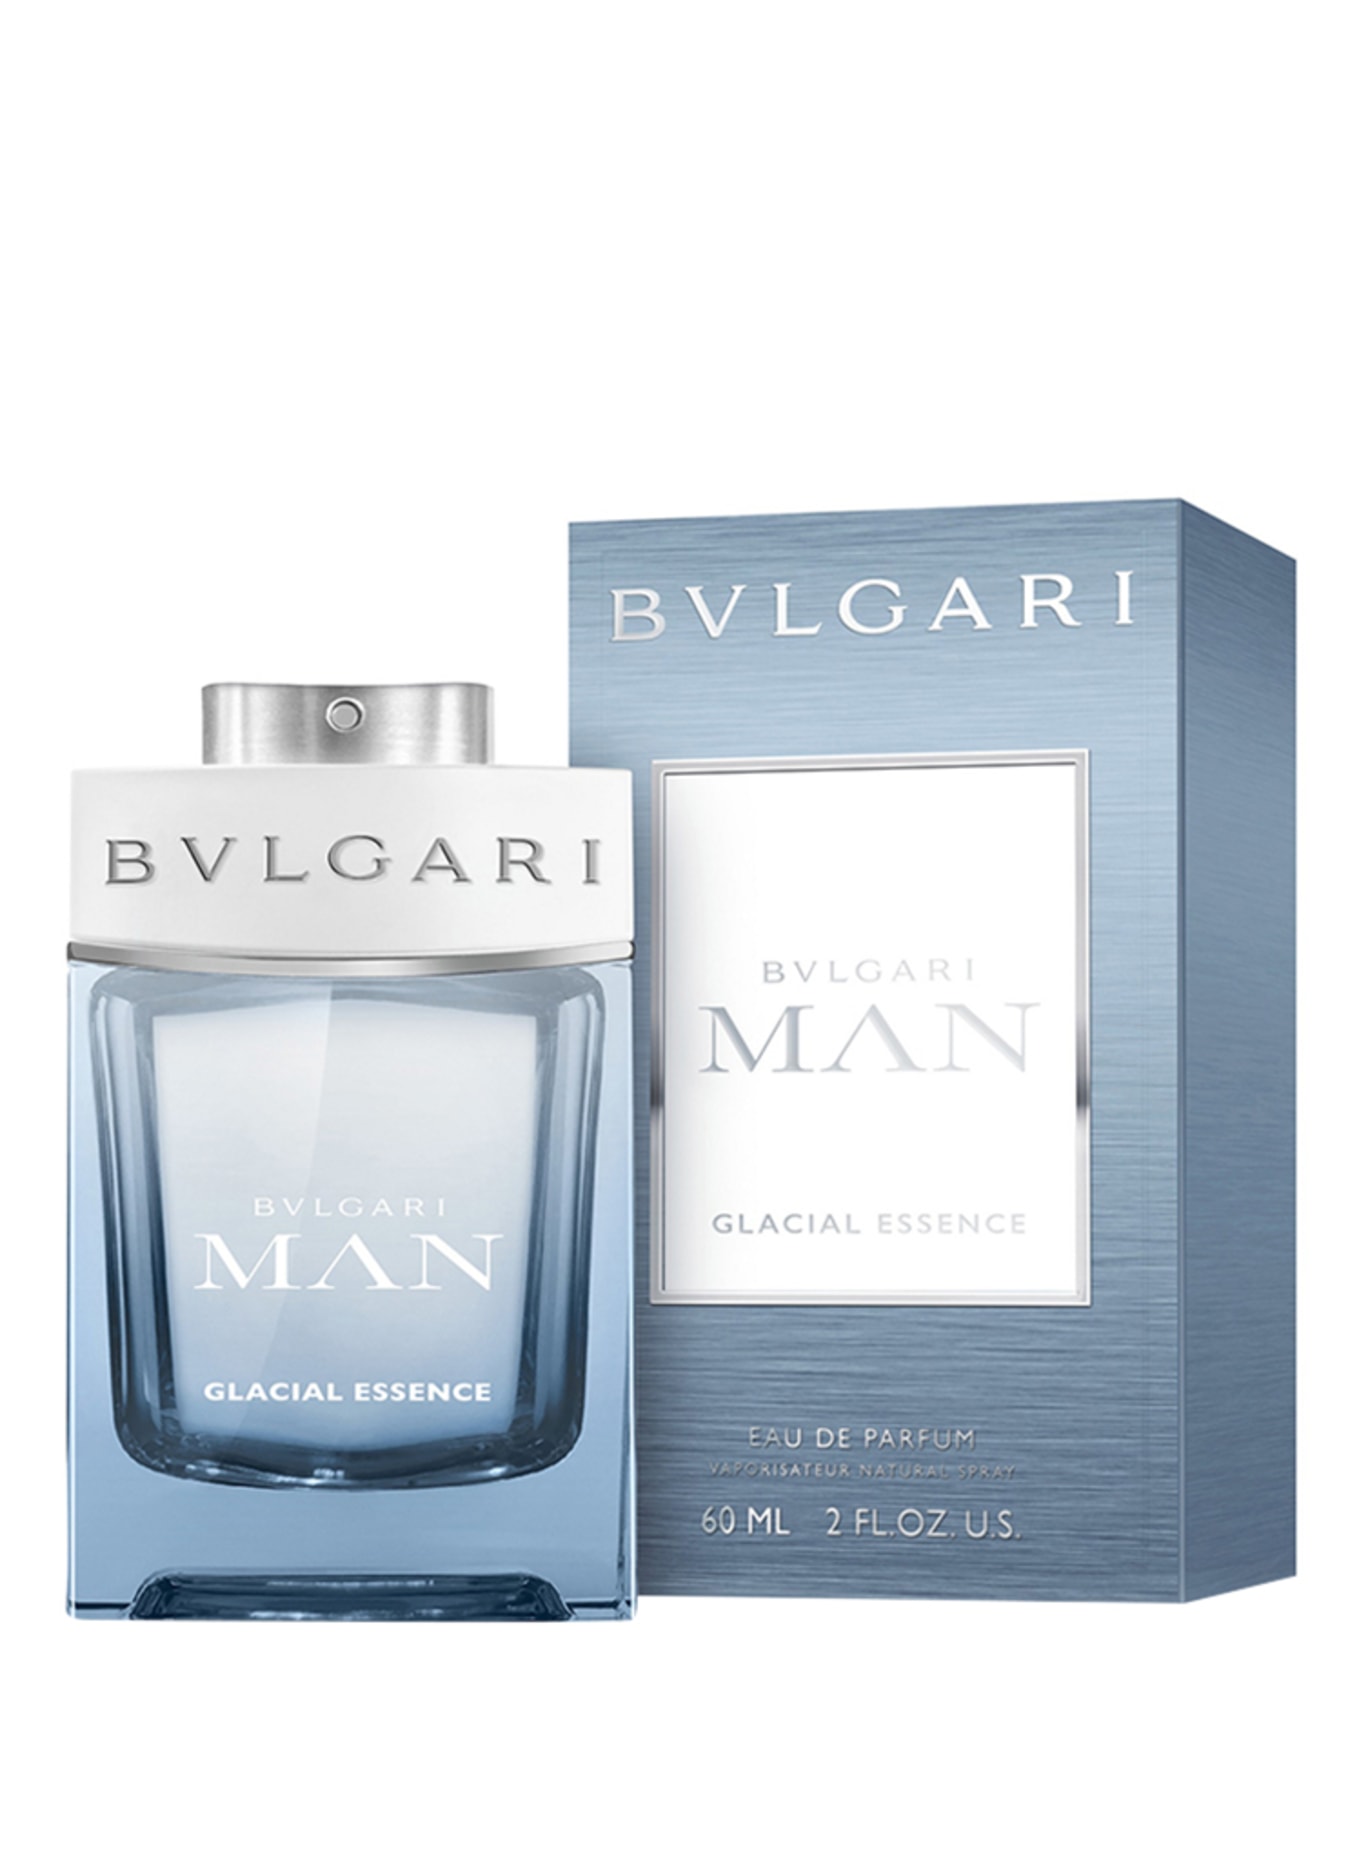 BVLGARI Fragrances GLACIAL ESSENCE (Obrazek 2)